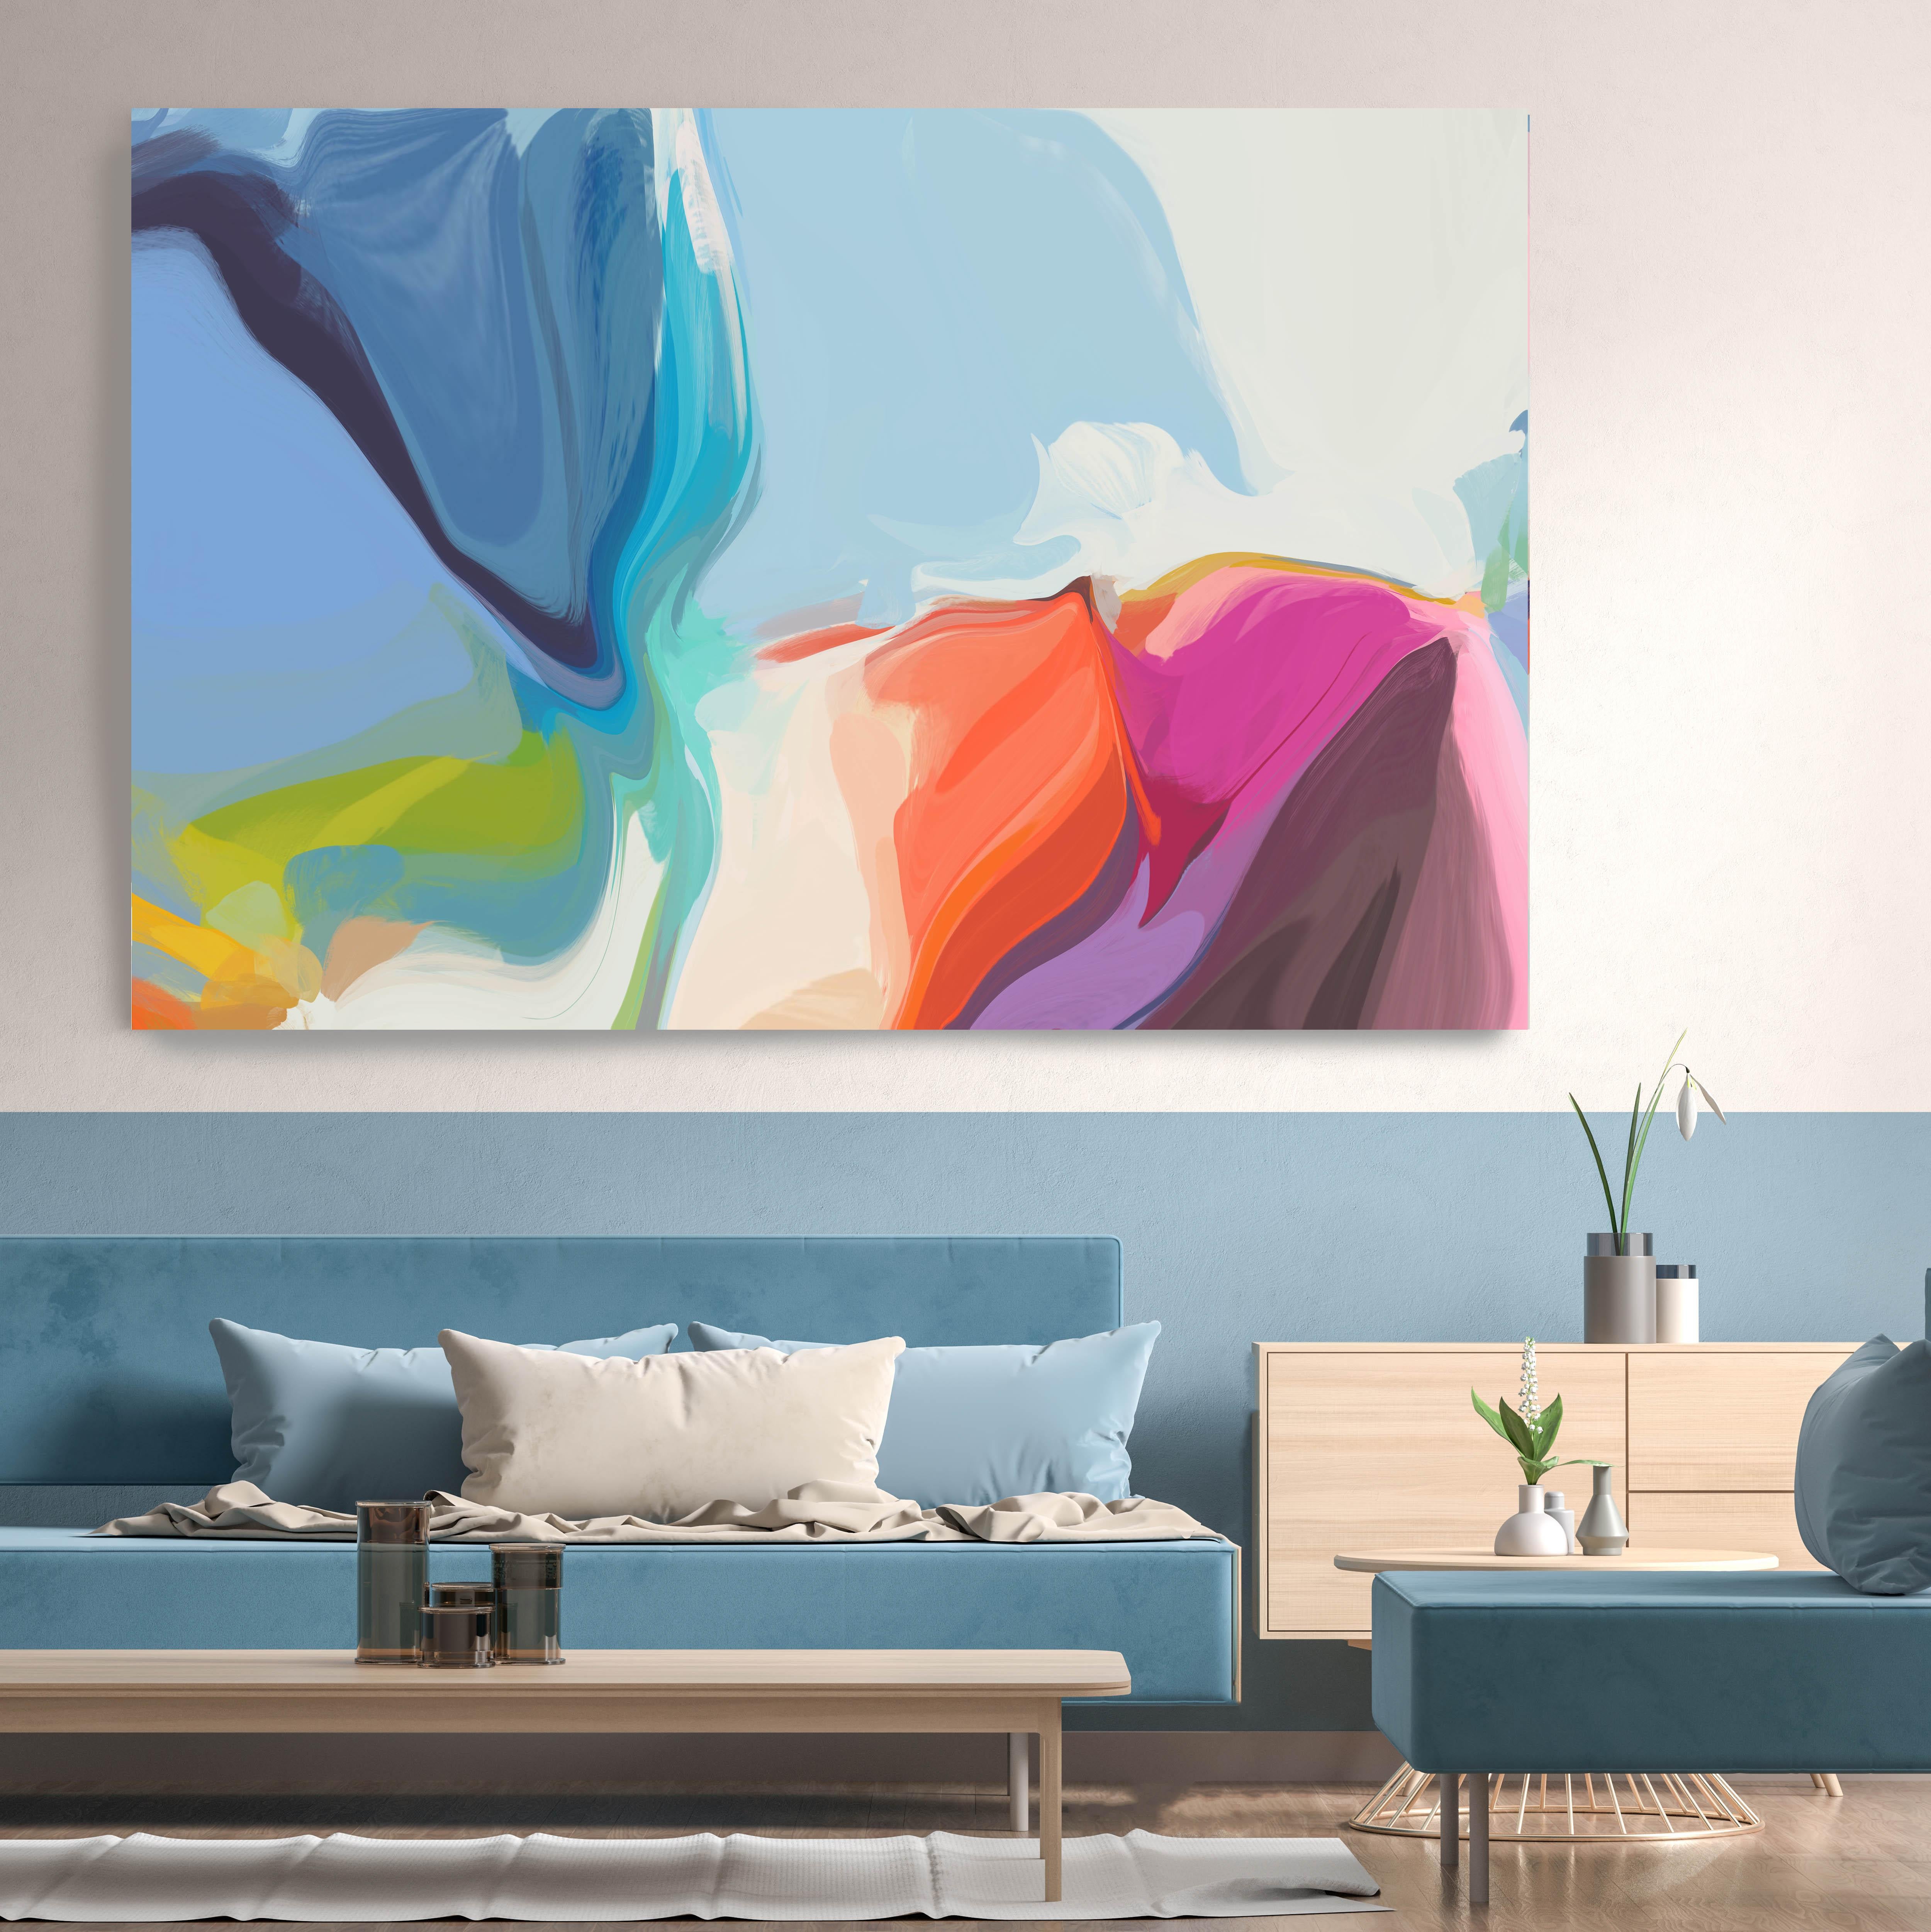 Peinture abstraite bleue sur toile technique mixte 101,6 x 152,4 cm La voix chaleureuse